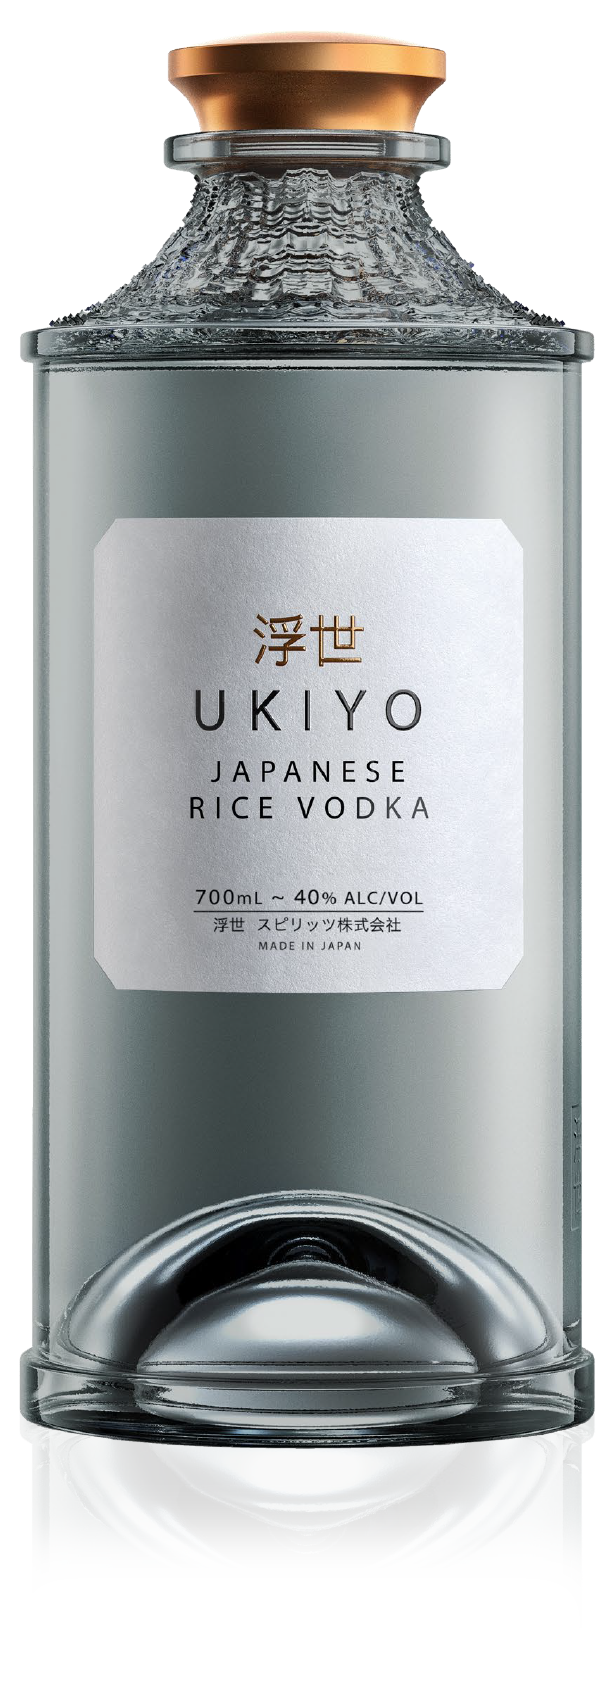 UKIYO JAPANESE RICE VODKA 0.70L 40% (čistá fľaša)